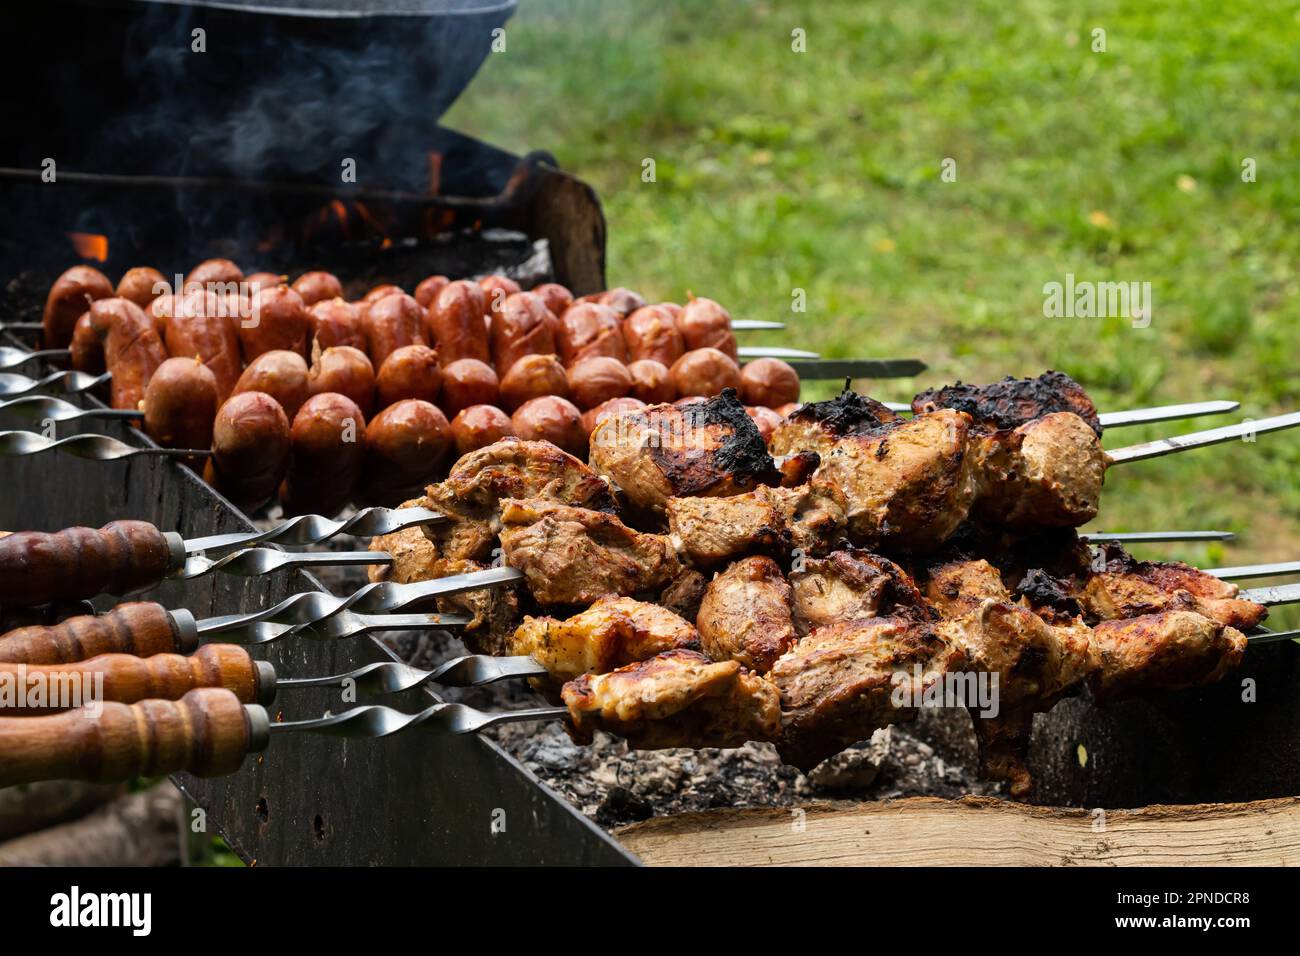 Shashlik mariné se préparant sur un barbecue au charbon de bois. Shashlik ou Shish kebab populaire en Europe de l'est. Shashlyk, la viande brochée était originaire Banque D'Images